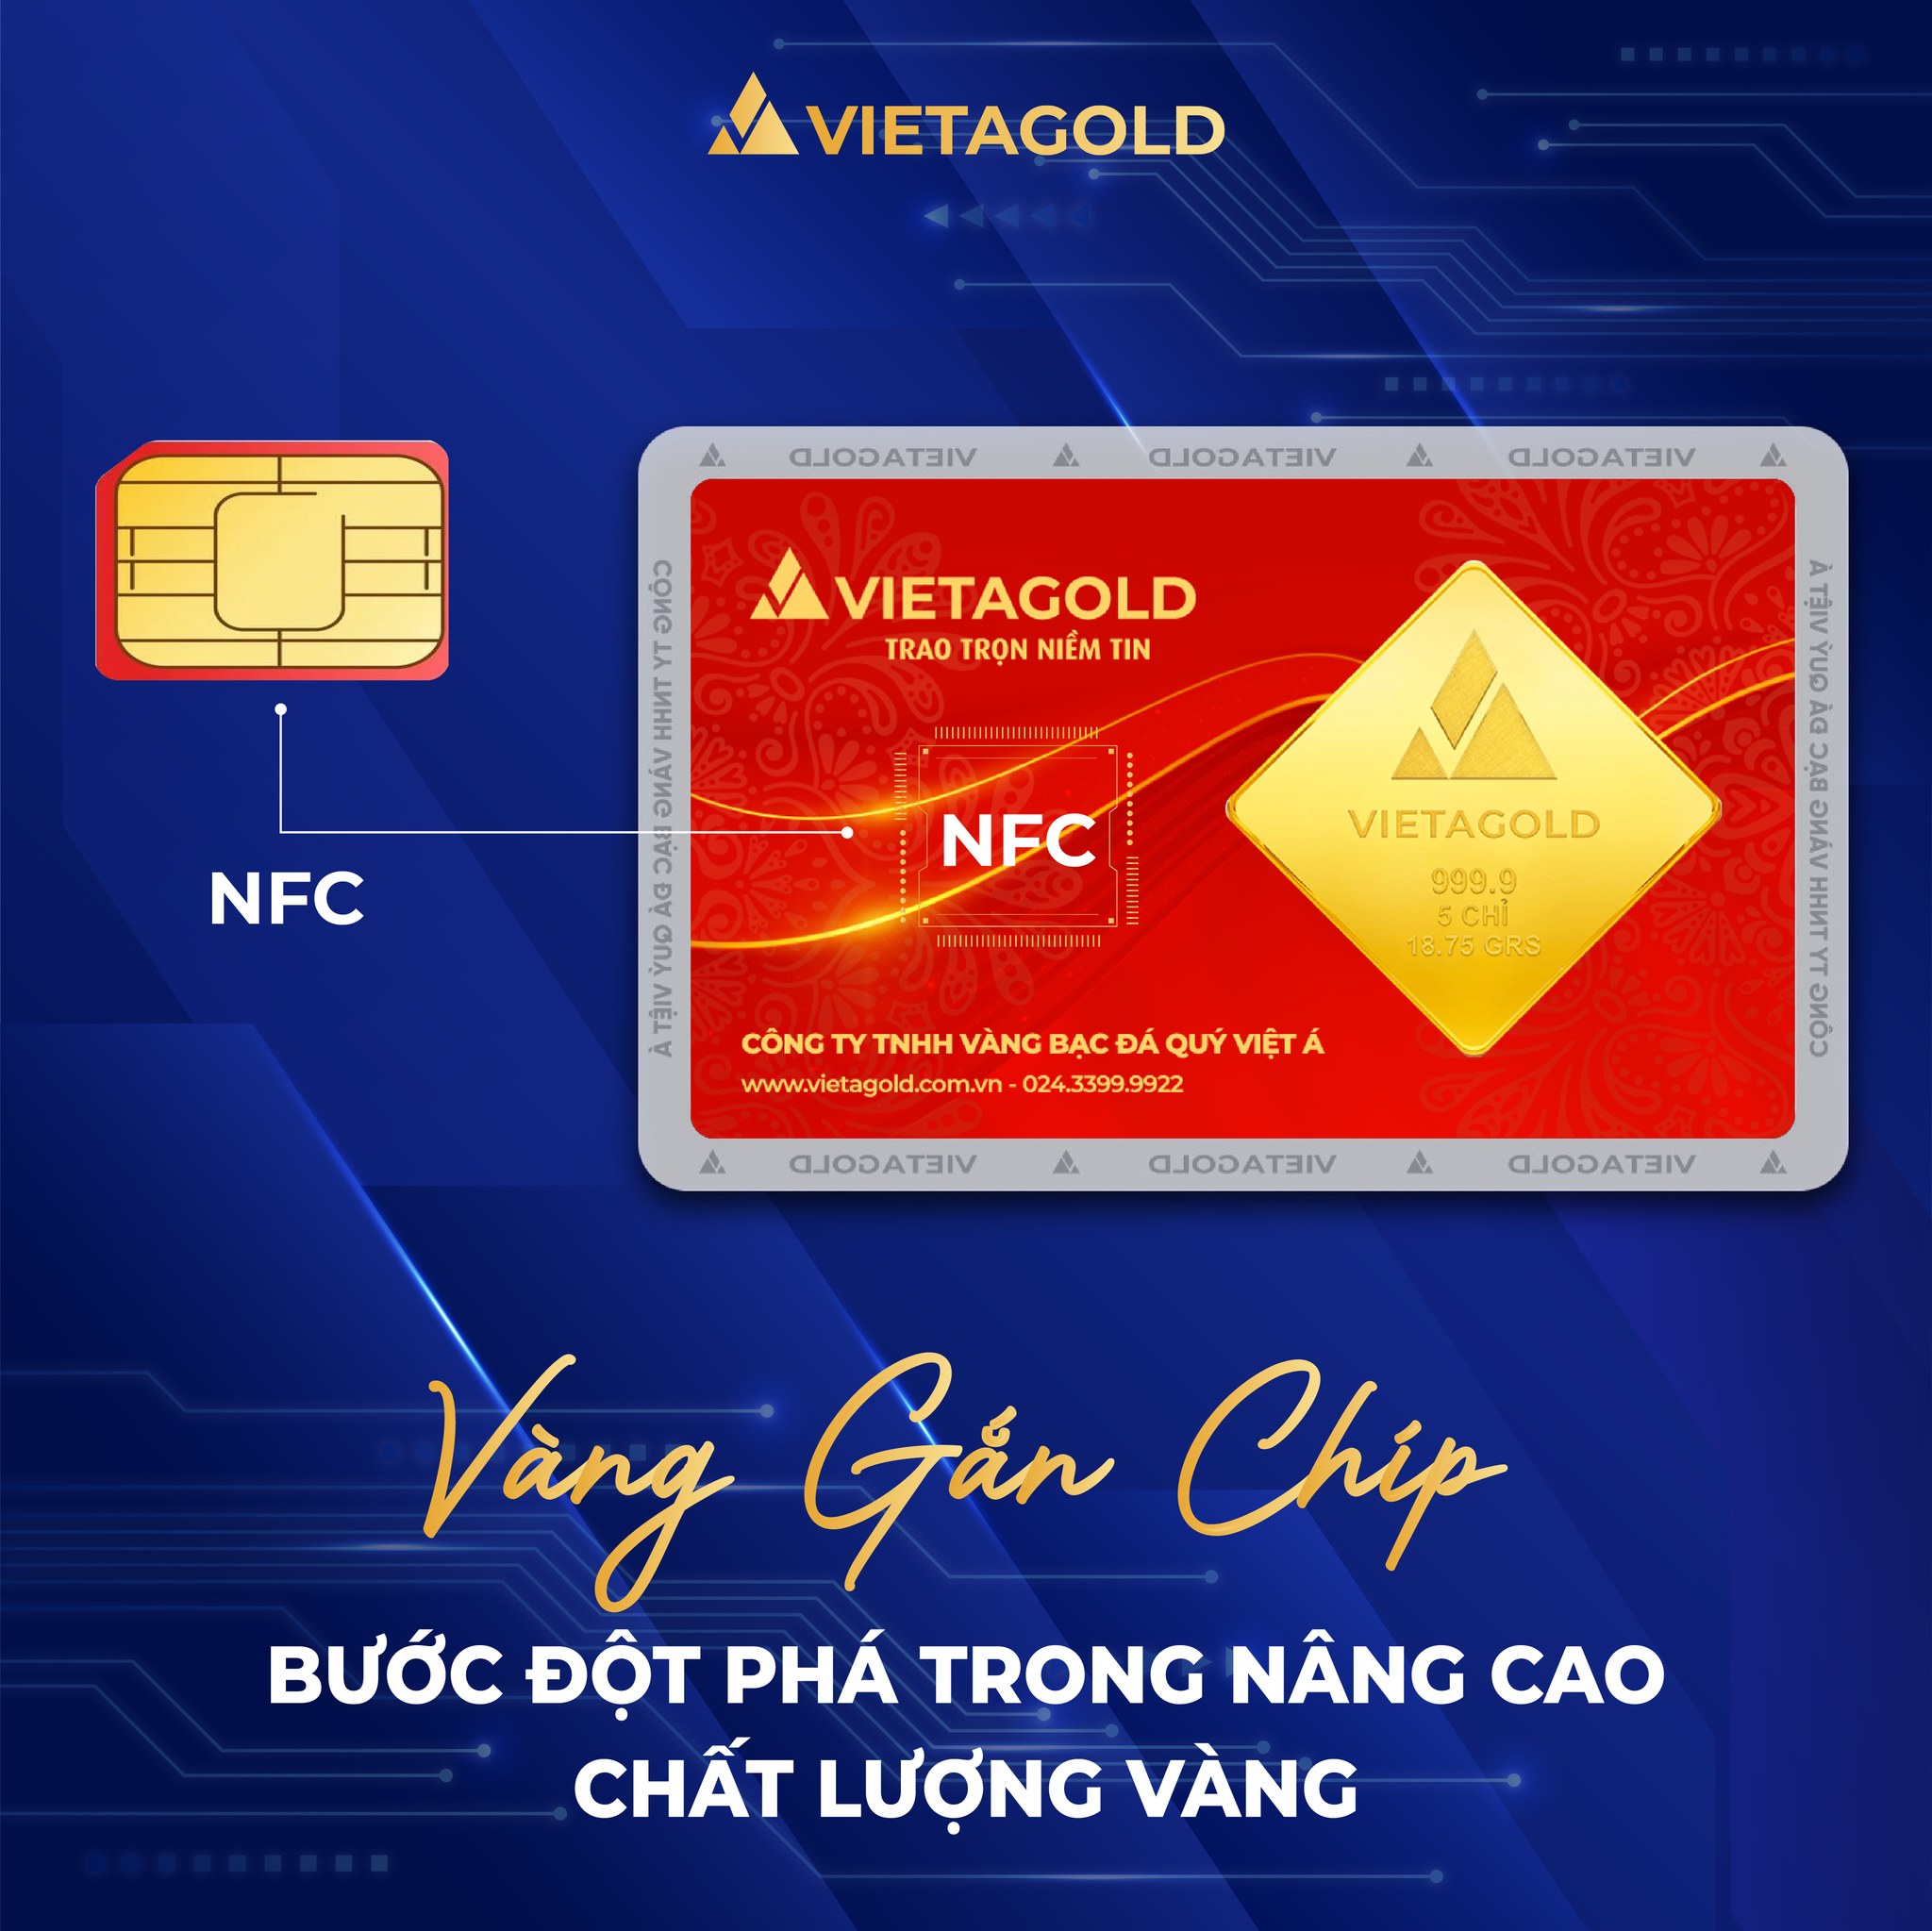 Gắn chip NFC cho sản phẩm vàng